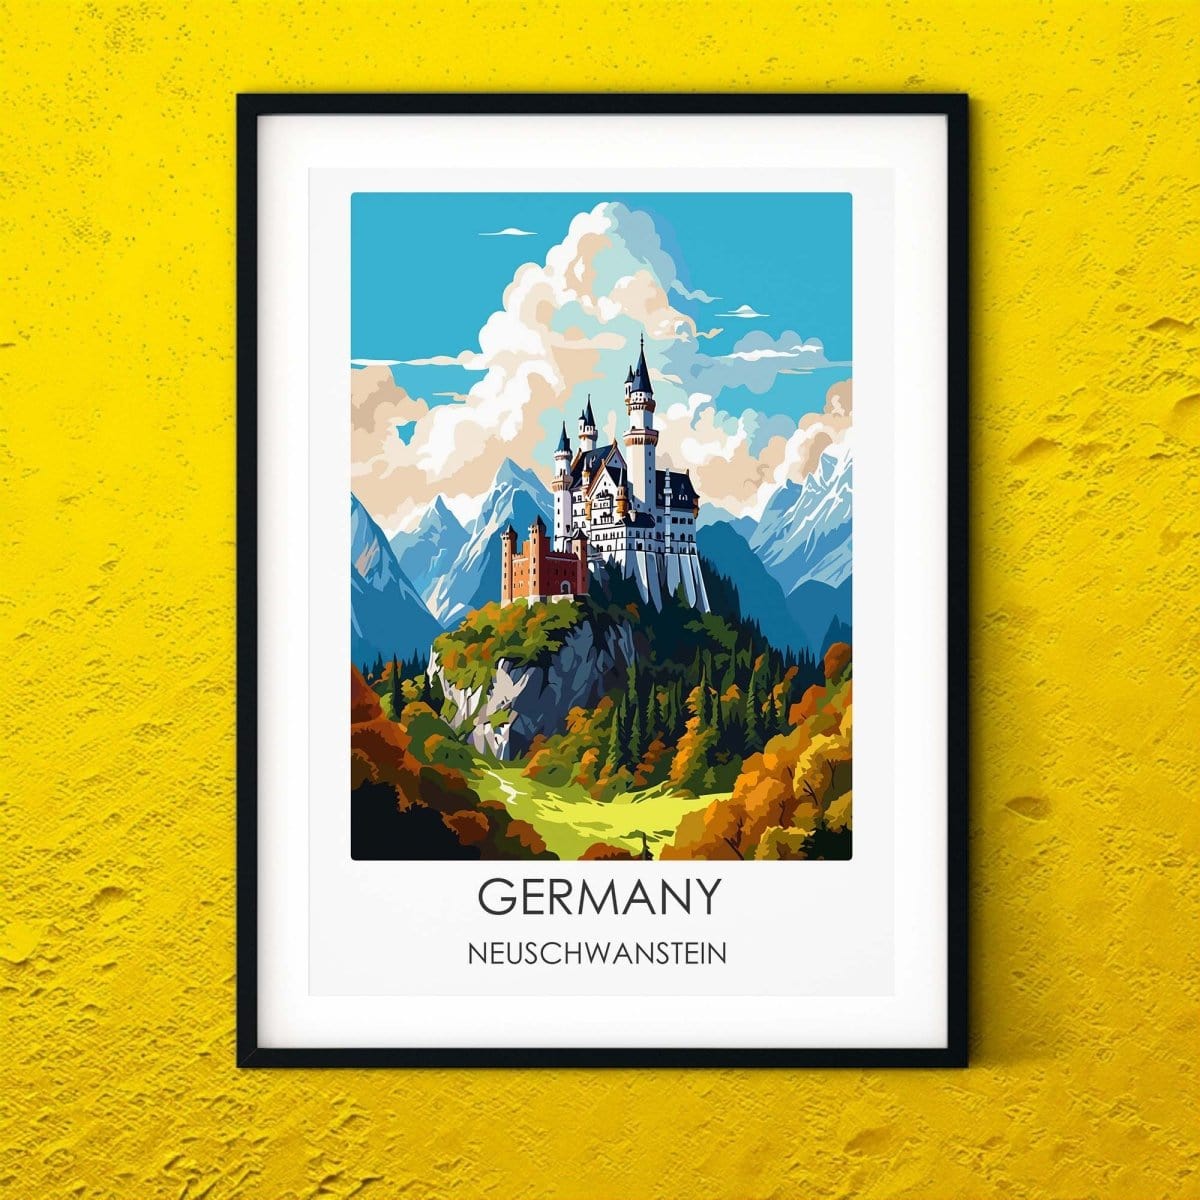 Germany Neuschwanstein modern travel print graphic travel poster